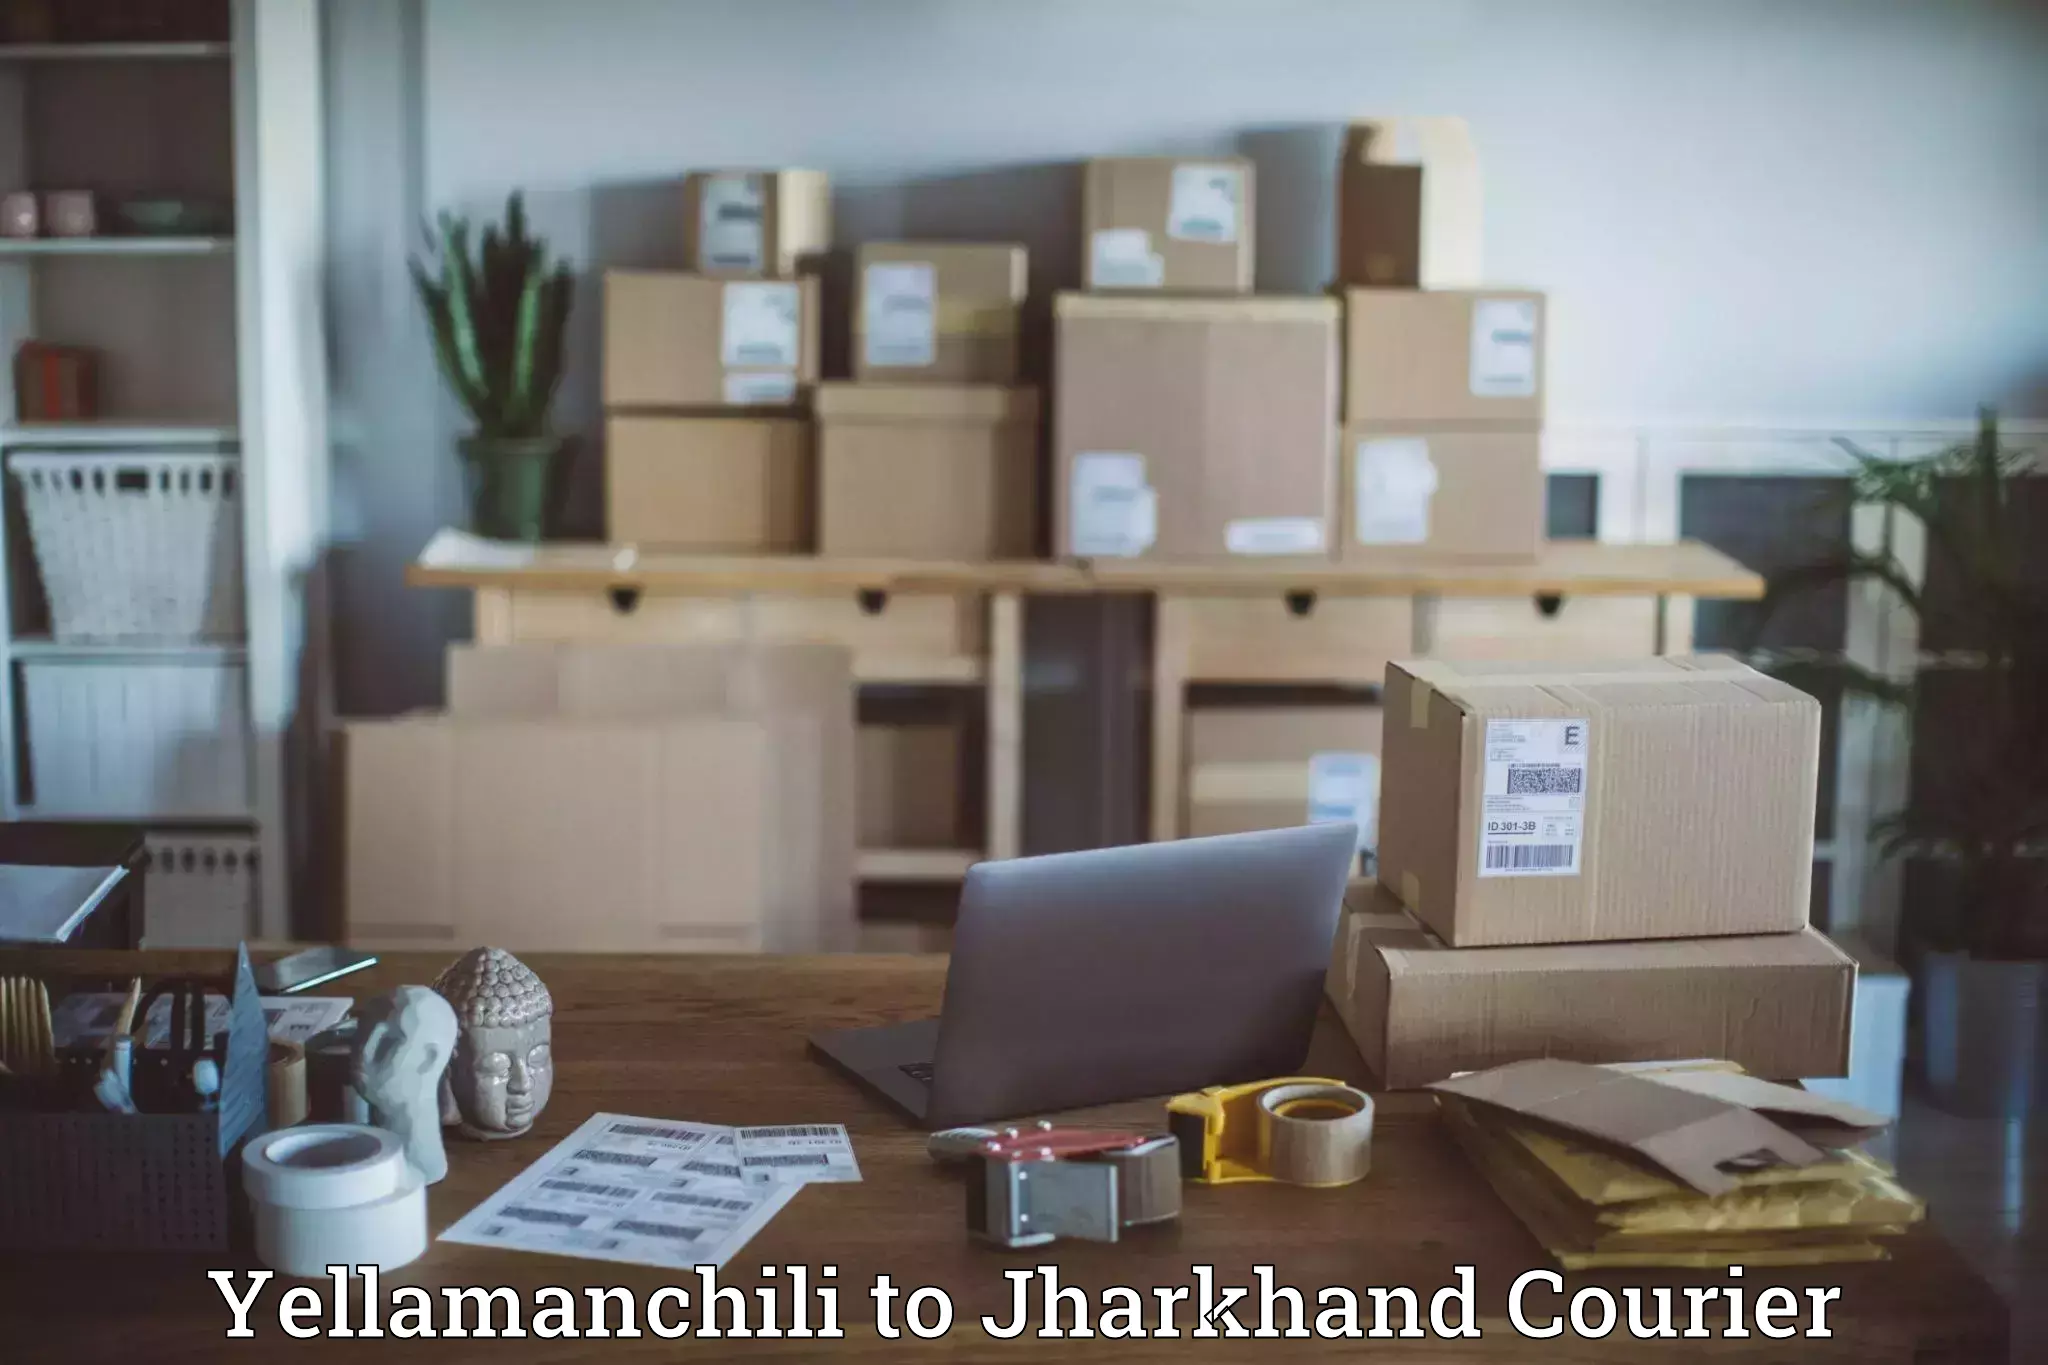 Large-scale shipping solutions Yellamanchili to Chandwa